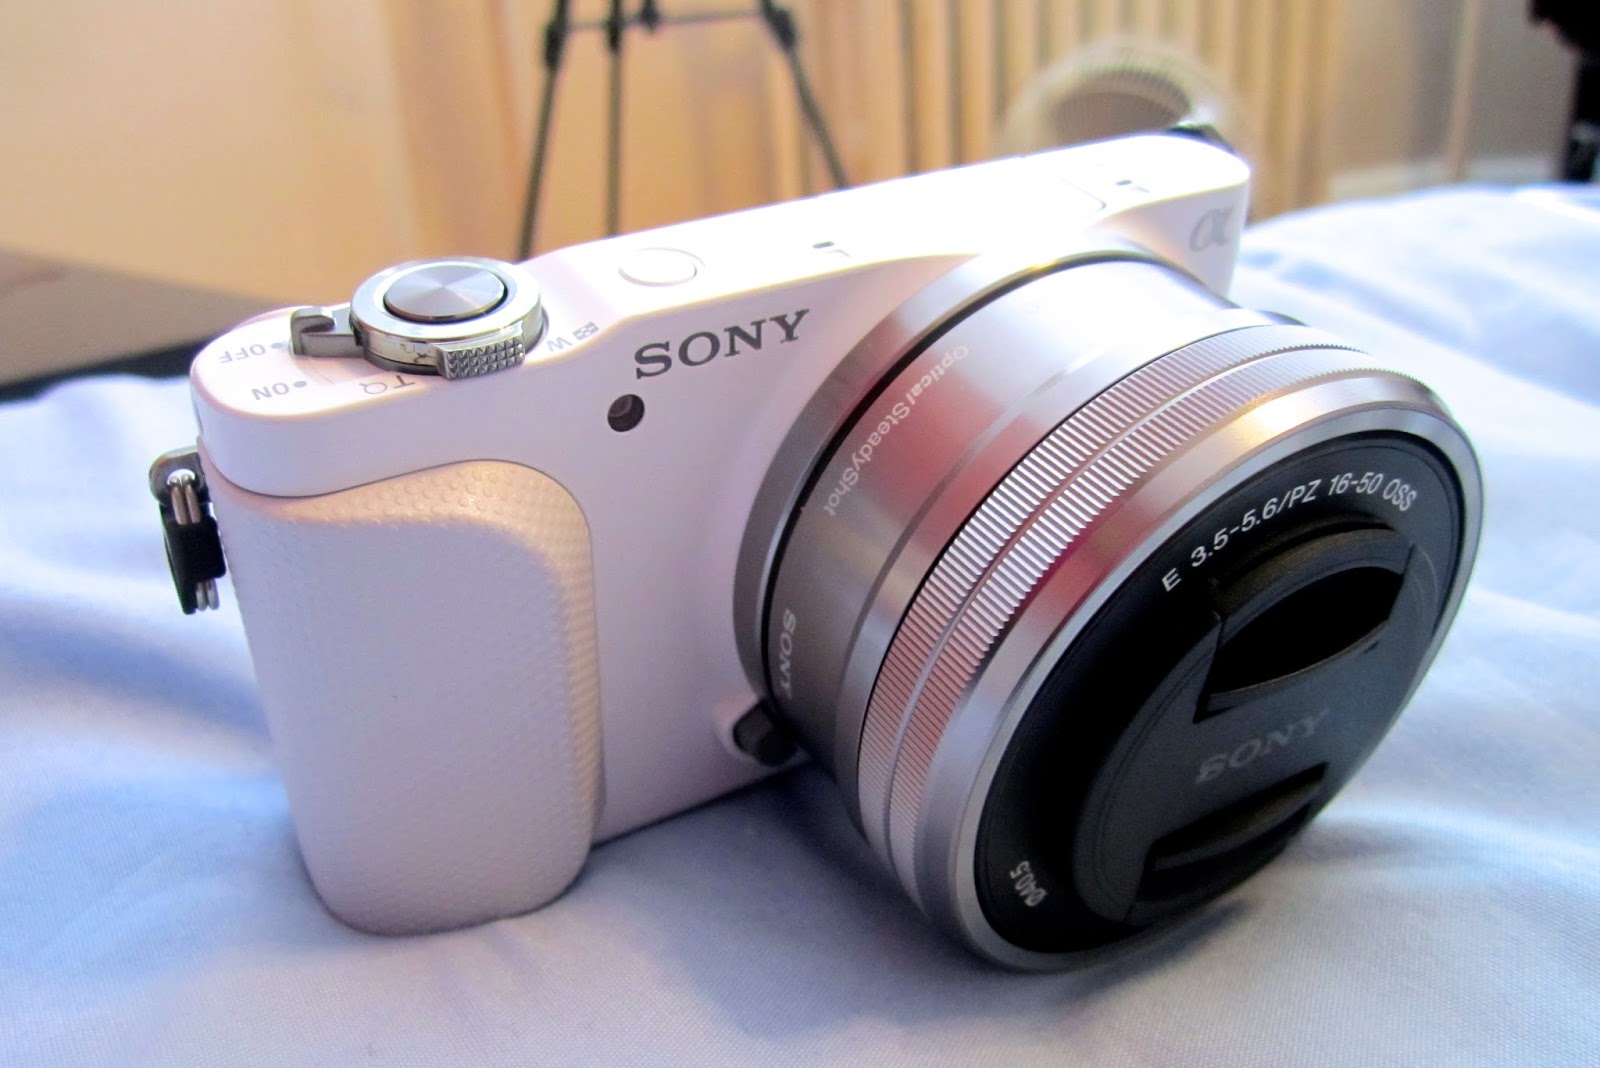 Canon 1100D+Kit, Sony A7, Sigma 35 1.4 ART, Flash F20M, Nex A3K, A5K, 5R, F3, 3N, 3, C3, SAM 55-200 - 16